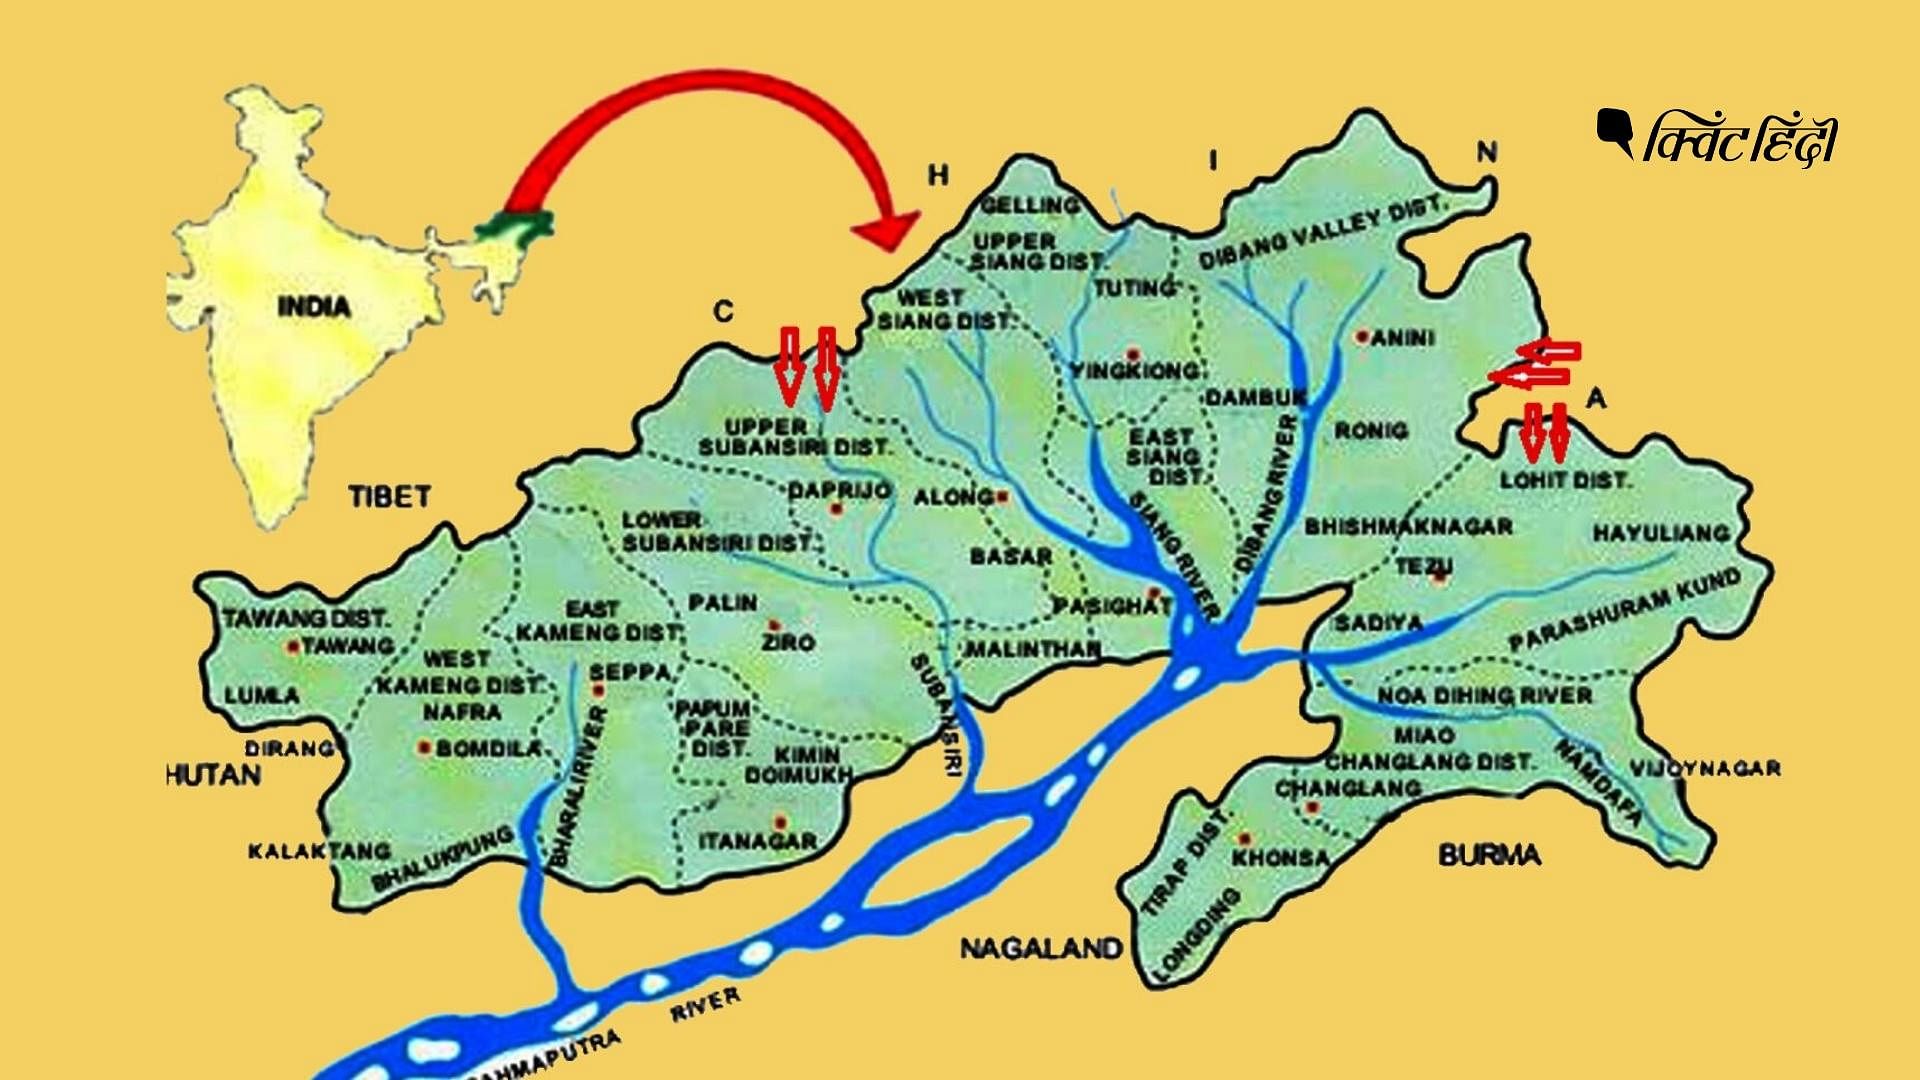 भारत के लिए बड़ी चिंता: अरुणाचल में LAC के पास चीन तेजी से निर्माण का काम कर रहा है